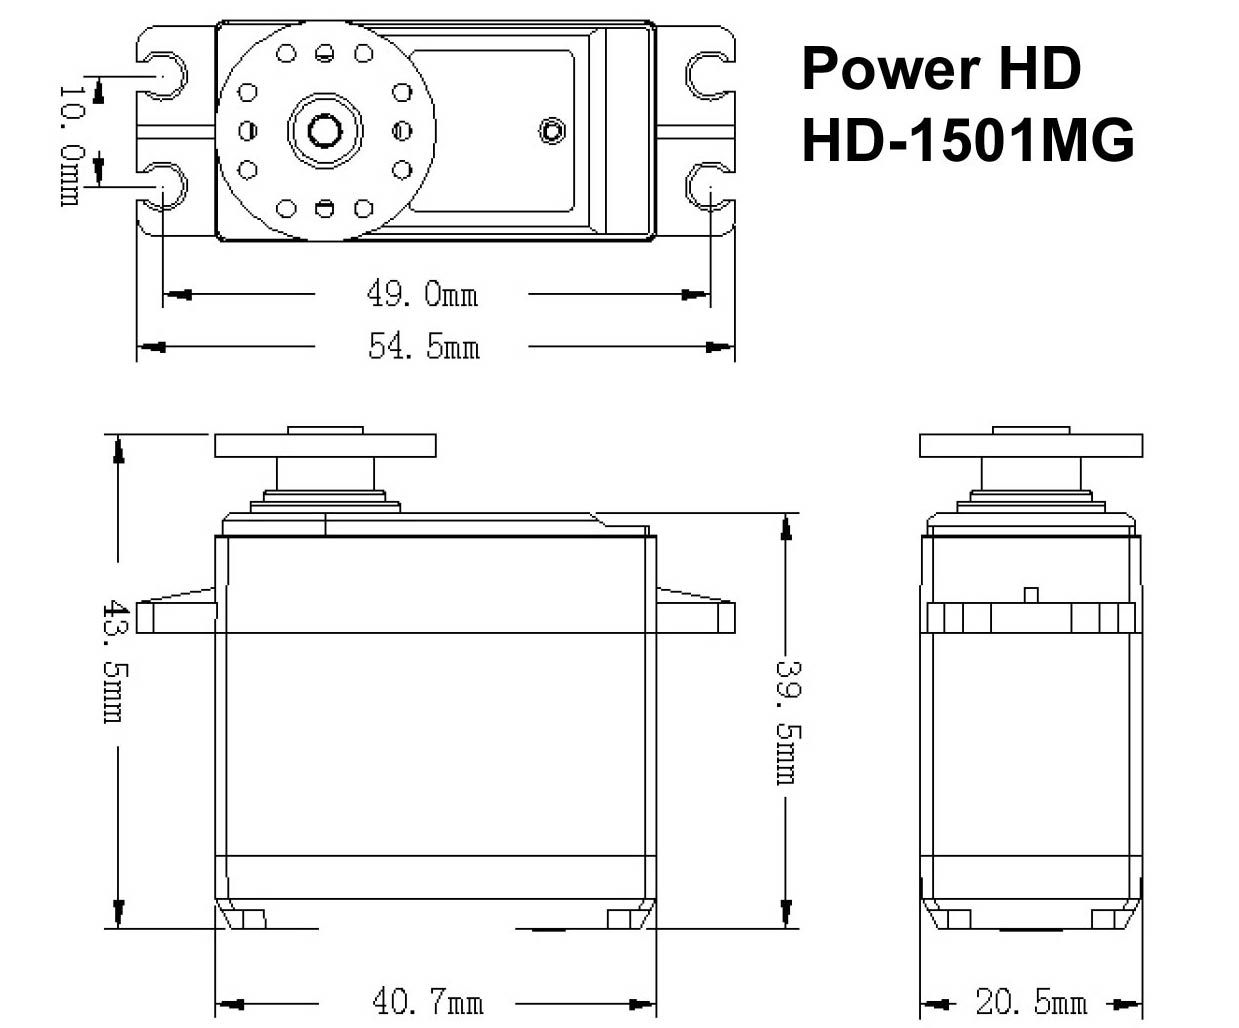 Аналоговая серво Power HD-1501MG